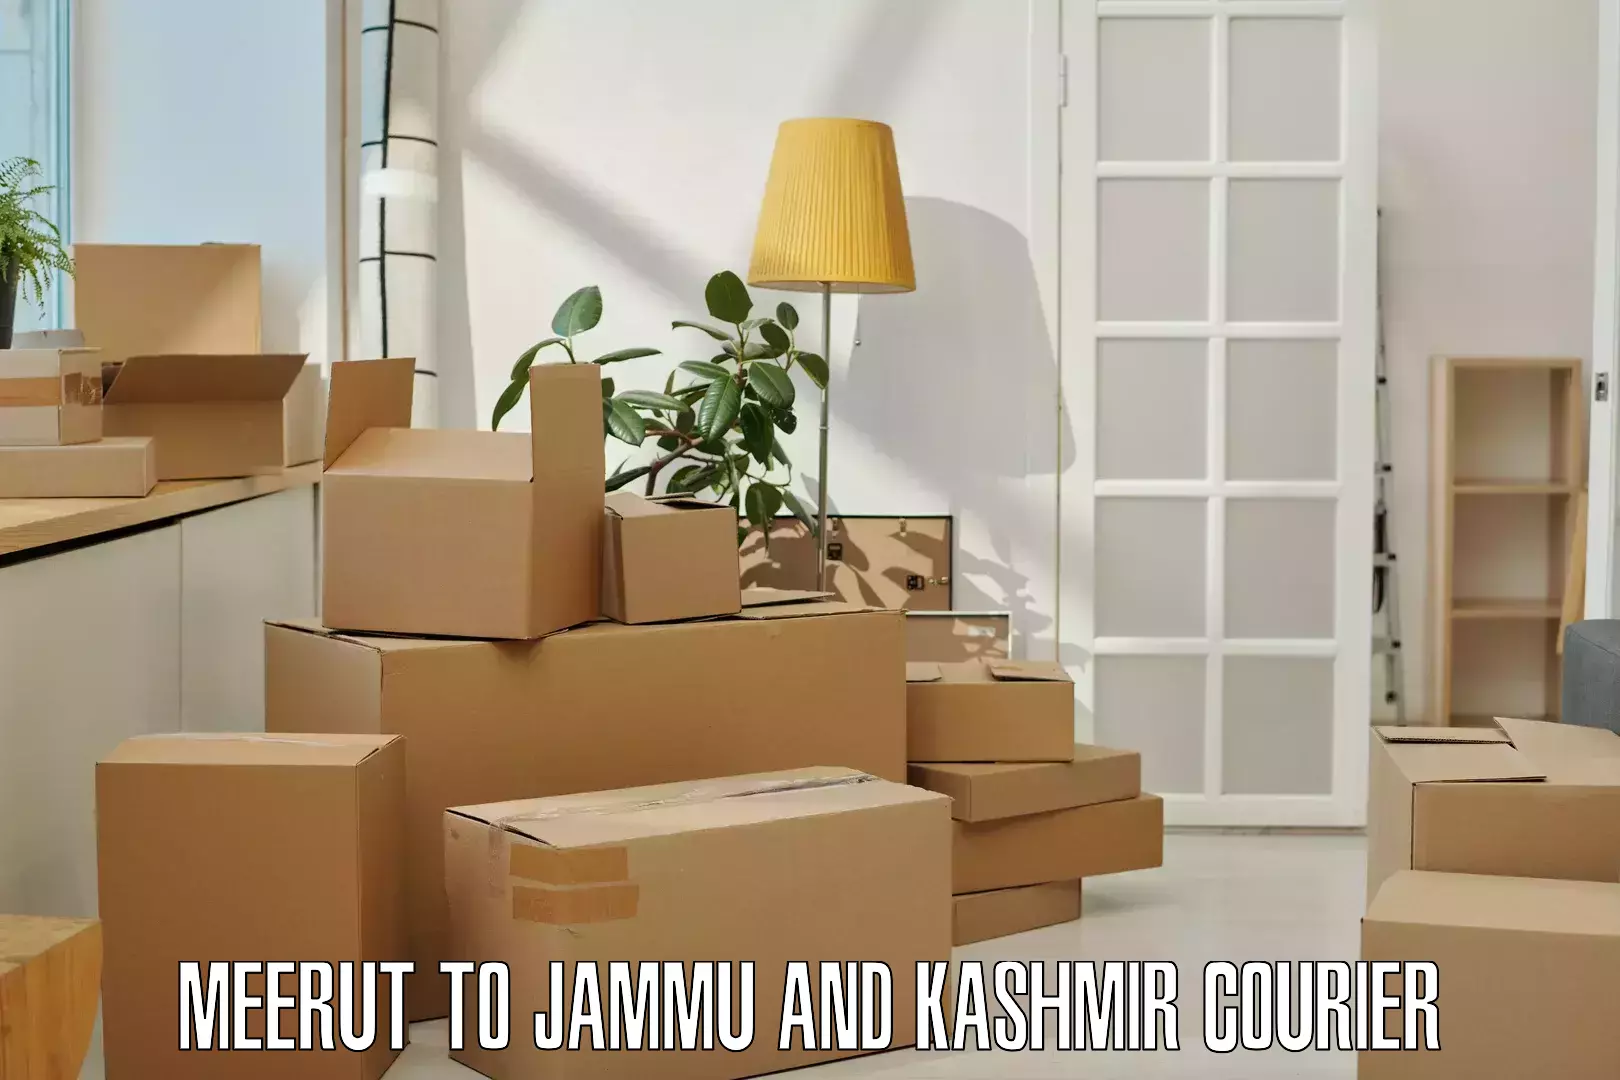 Express delivery capabilities Meerut to IIT Jammu